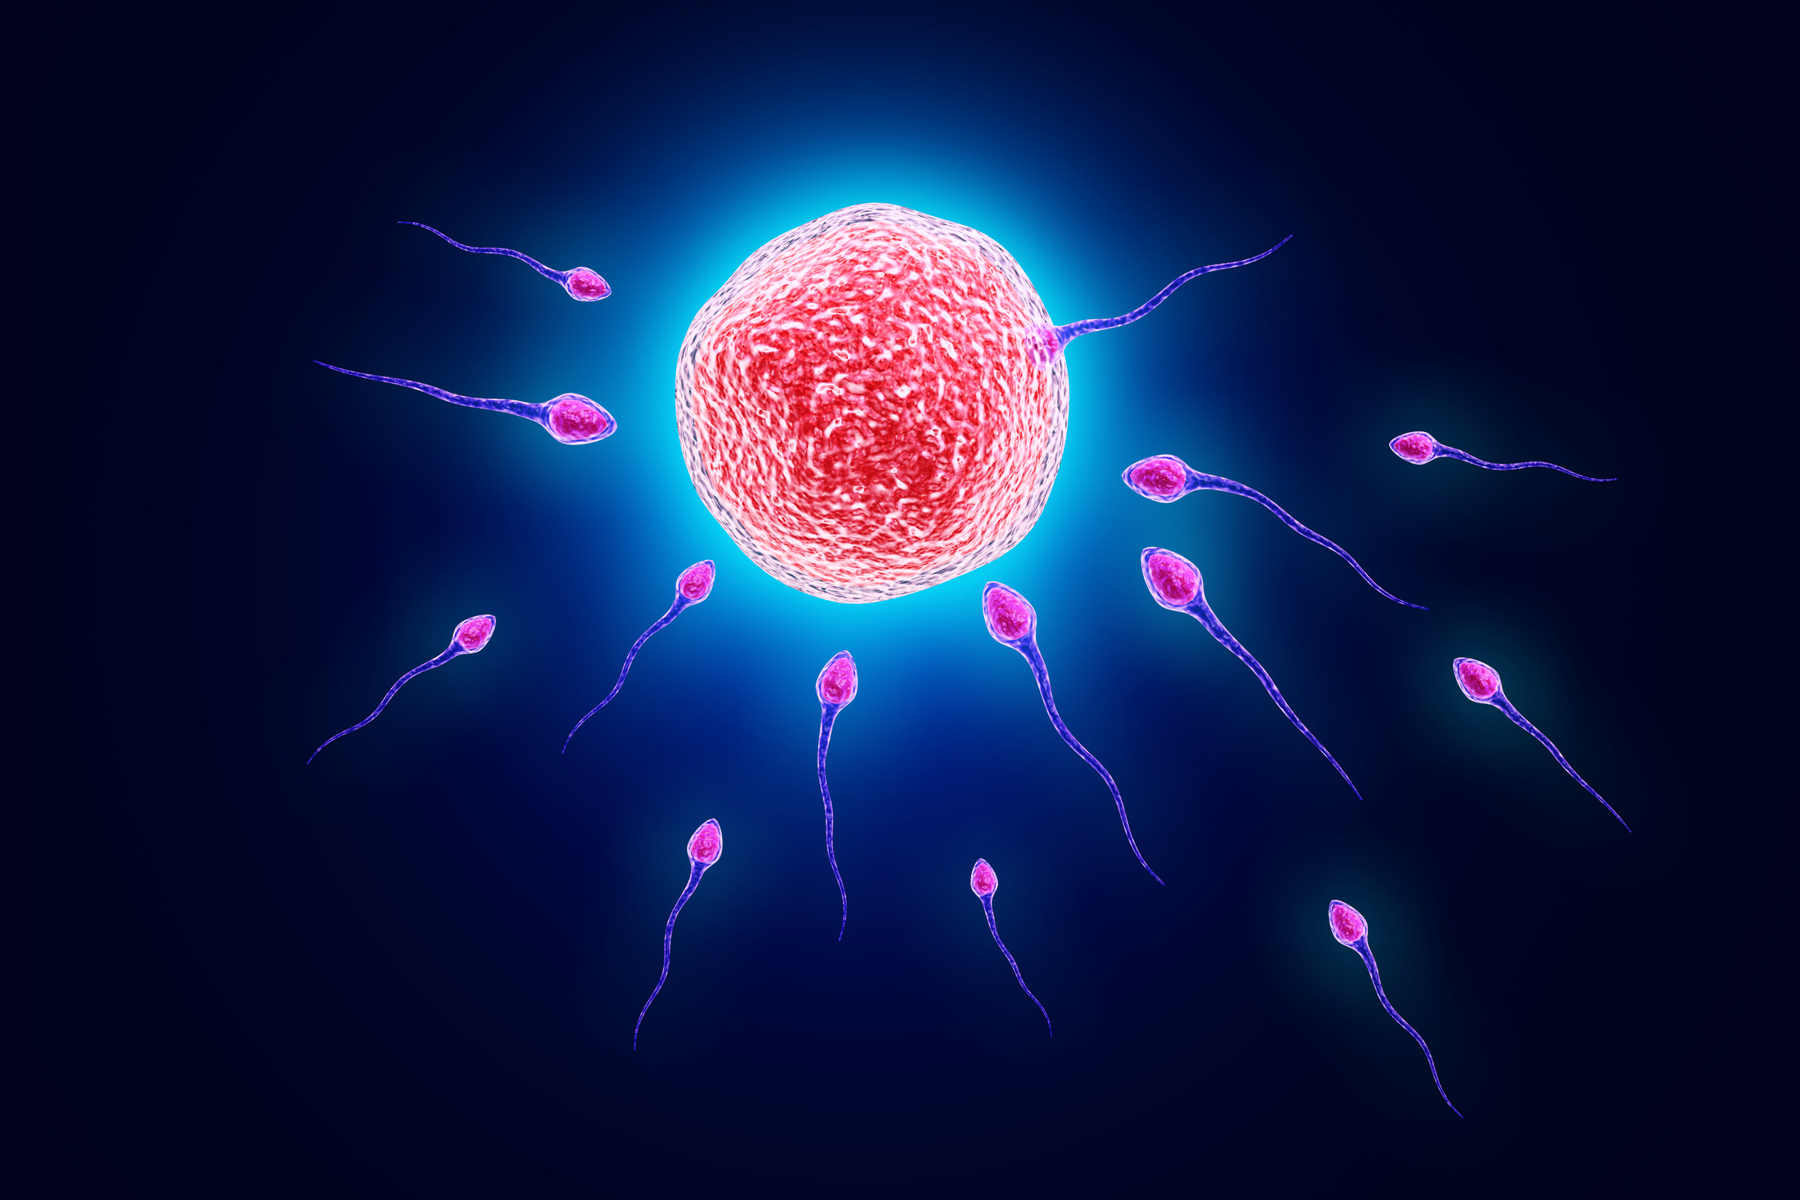 Beneficio de la reproducción sexual: nos hace menos propensos a las enfermedades a largo plazo